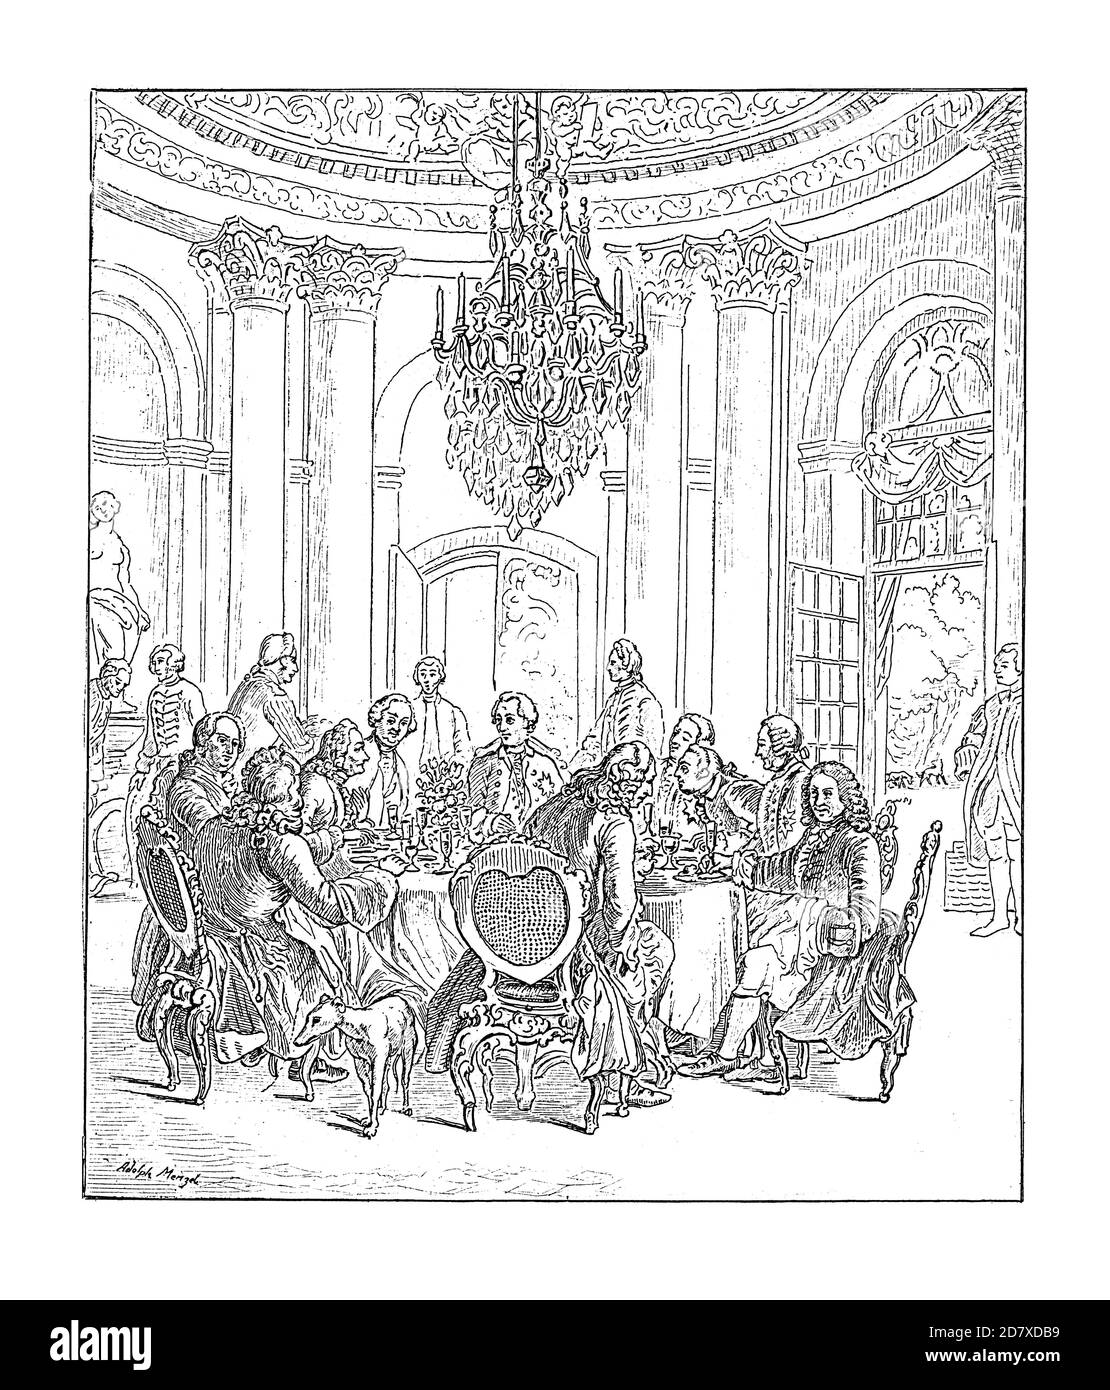 Illustration du XIXe siècle représentant la Table ronde à Sanssouci, peinture d'Adolph Menzel. Il était artiste allemand noté pour les dessins, les gravures, et pai Banque D'Images